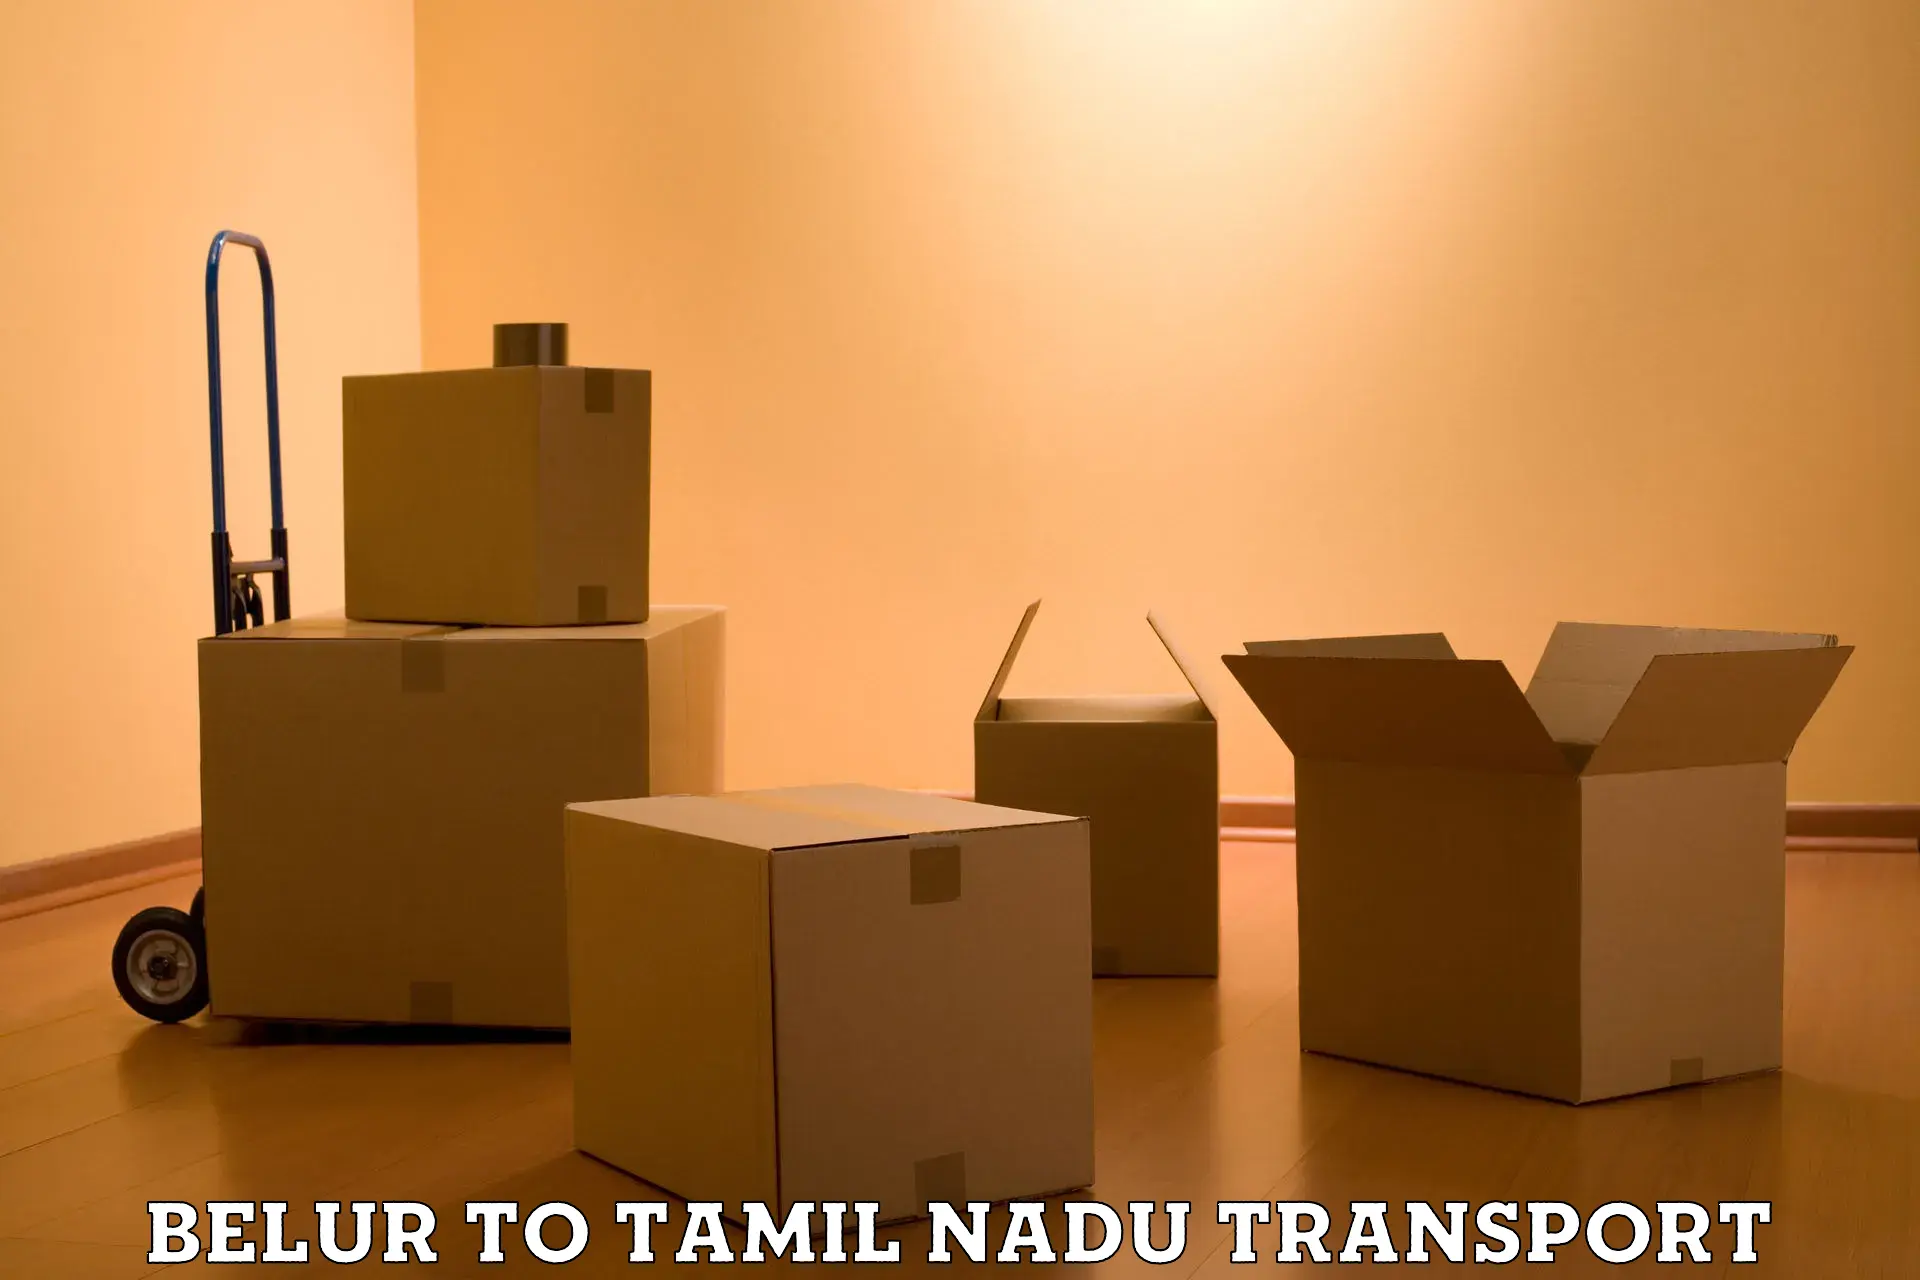 Daily parcel service transport Belur to Tamil Nadu